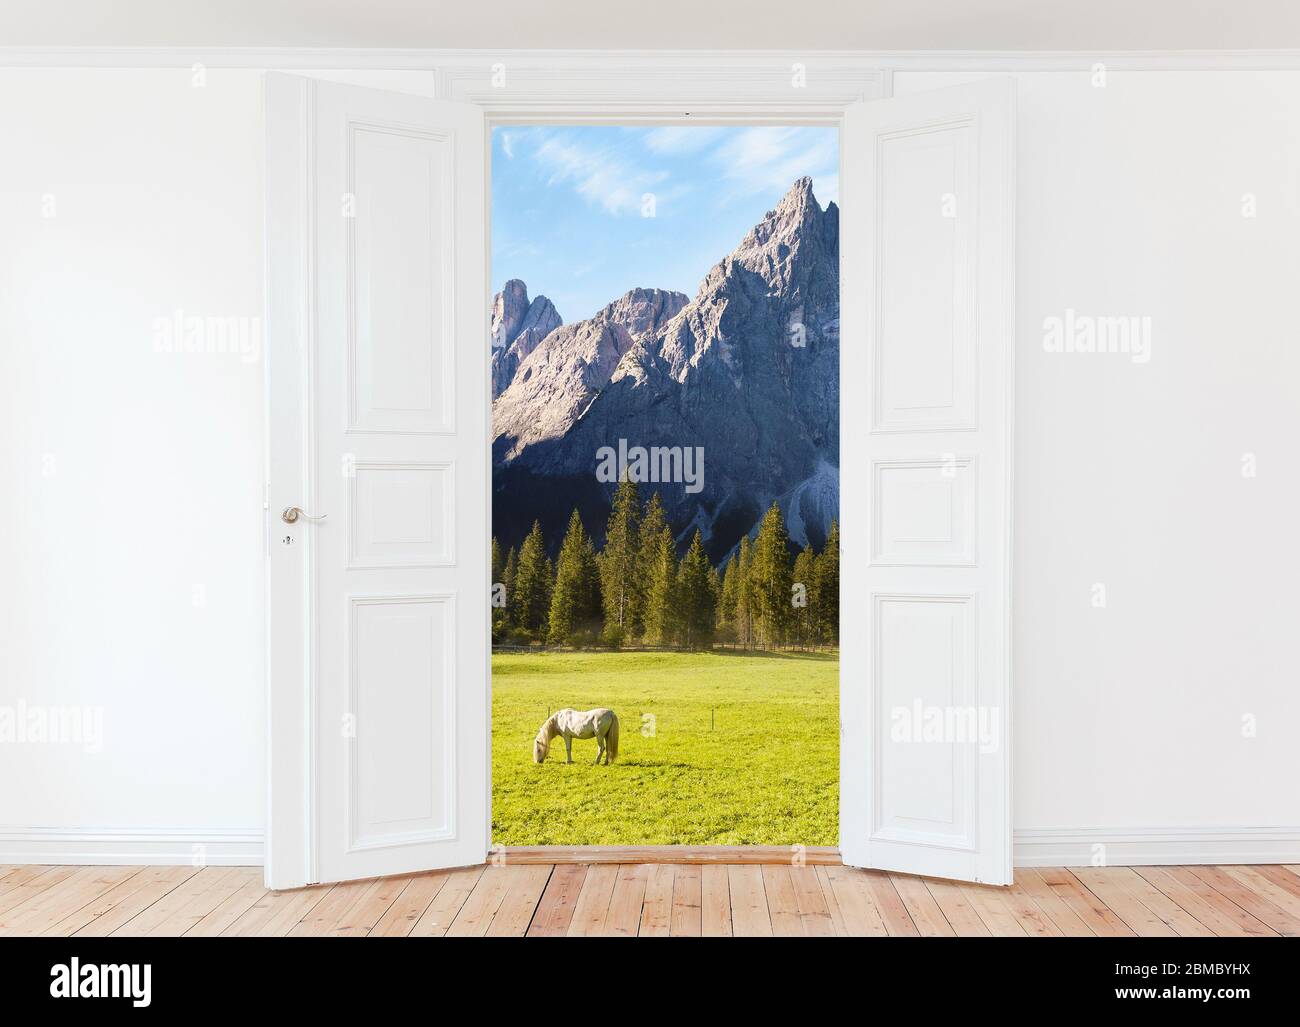 Amplia puerta abierta en habitación vacía con vistas al paisaje de las montañas y al exterior de los caballos pastando Foto de stock